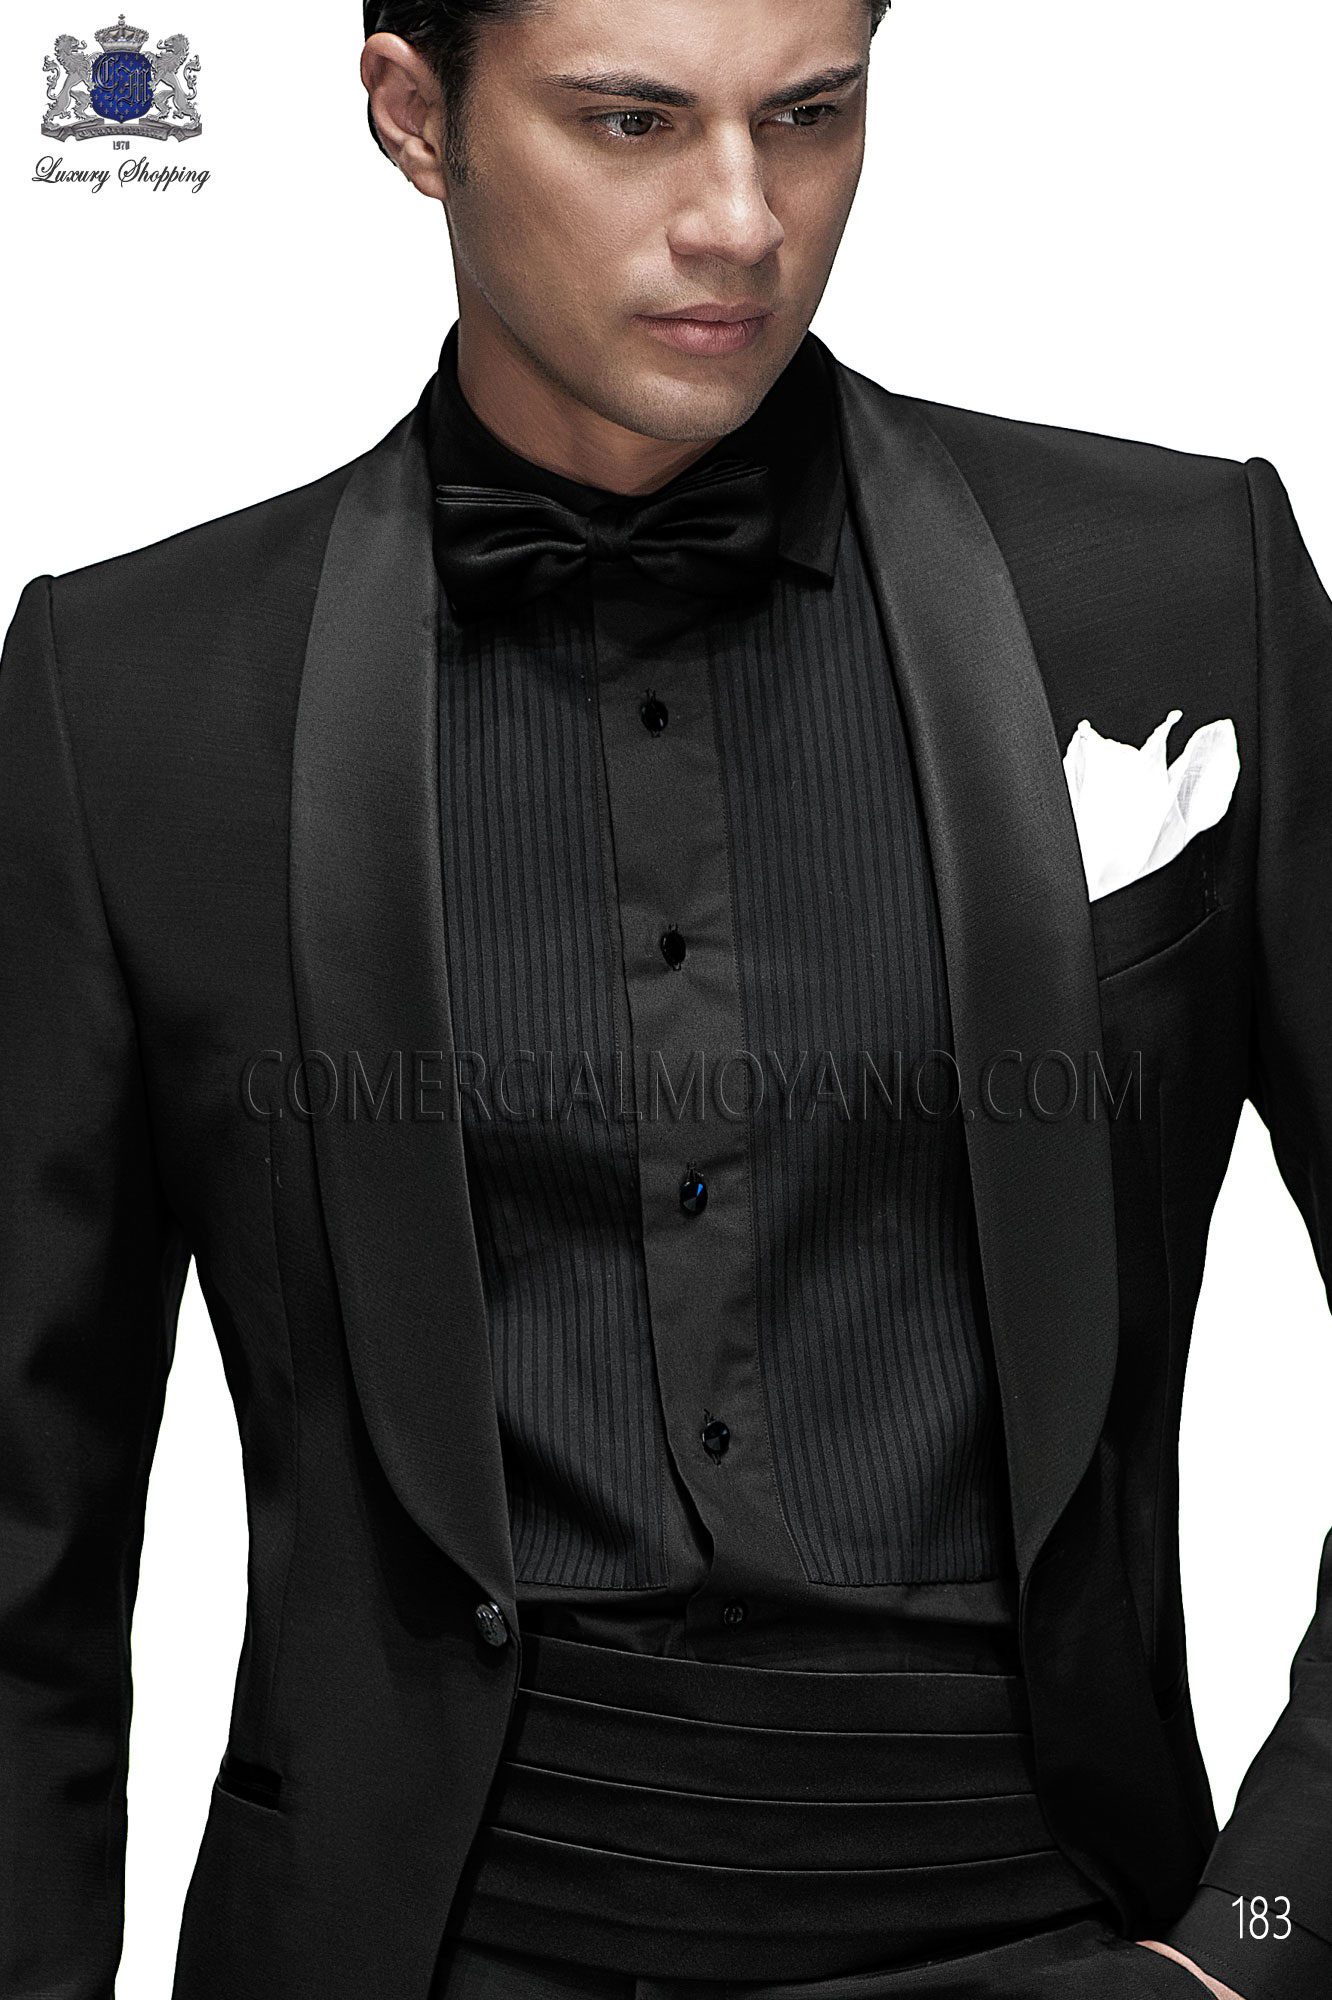 Mens Formal Wear,Mens Suits, Suits, Custom suit, suits, mtm suit, bespoke suits, tailored Suits, ready made suit